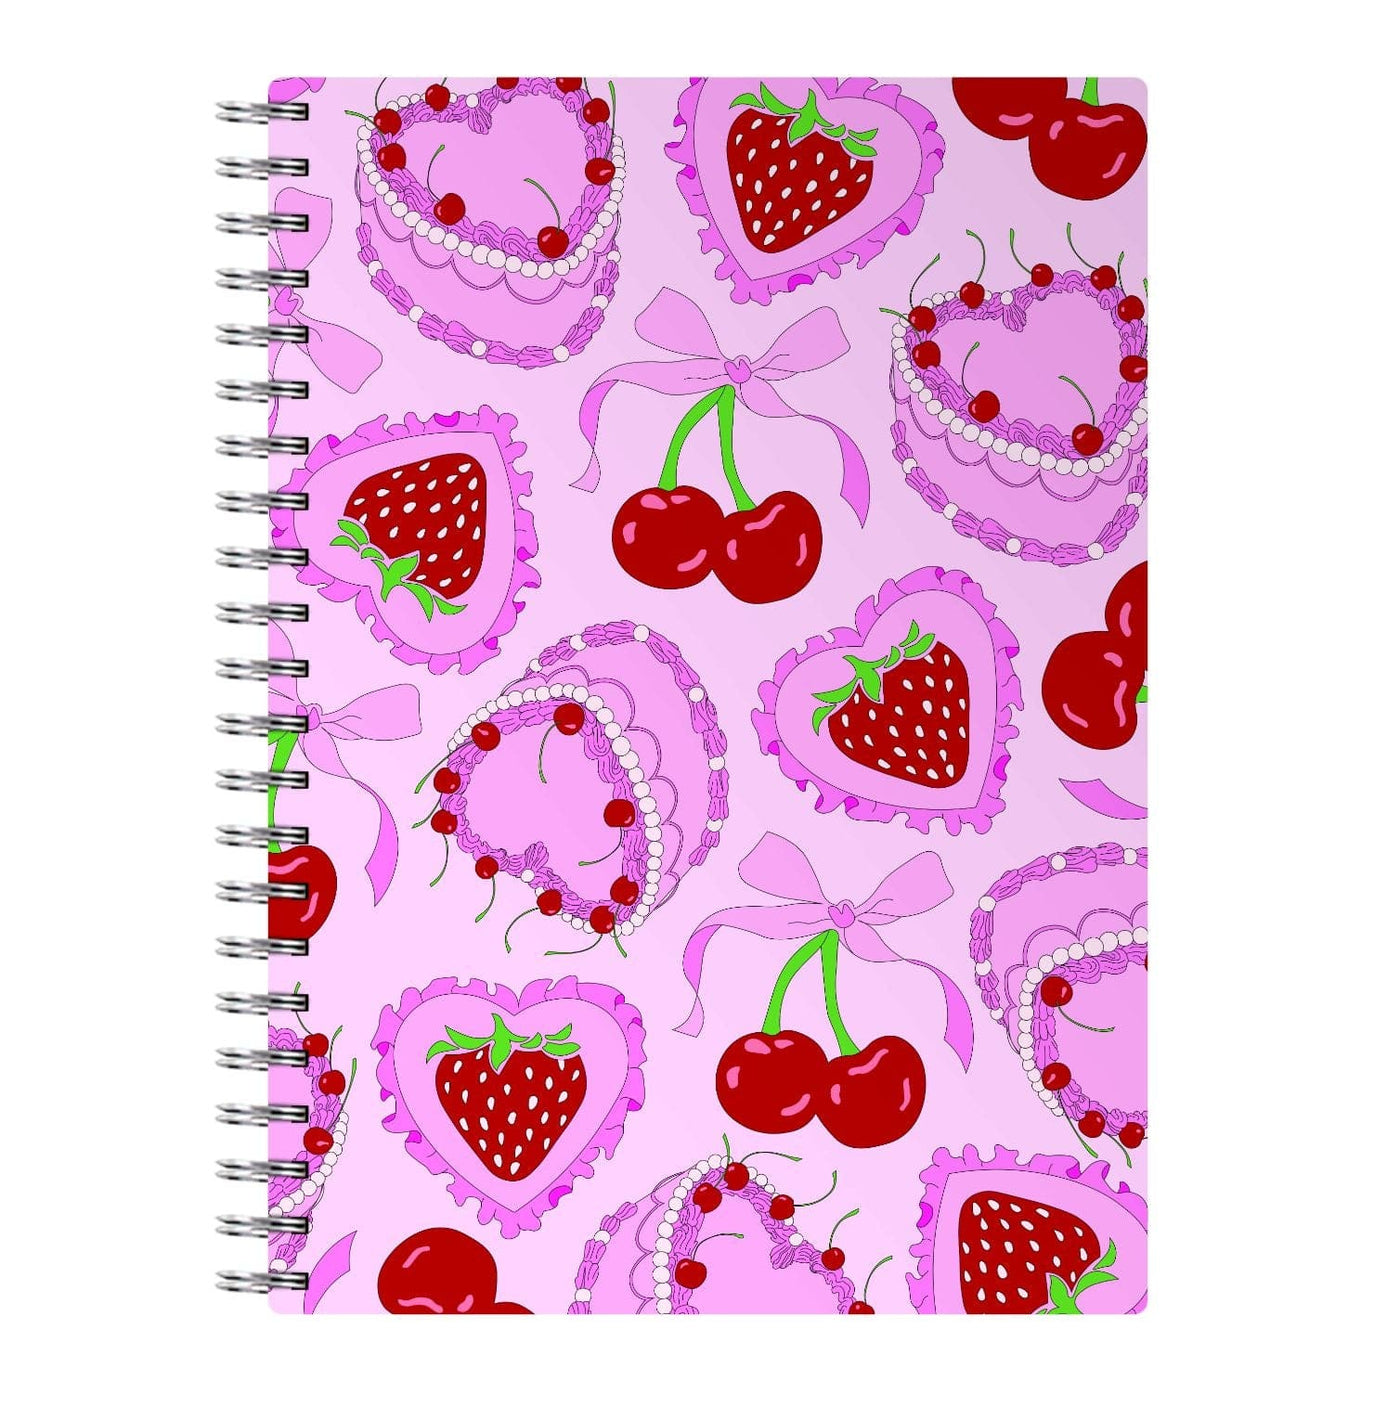 Cherries, Strawberries And Cake - Valentine's Day Notebook